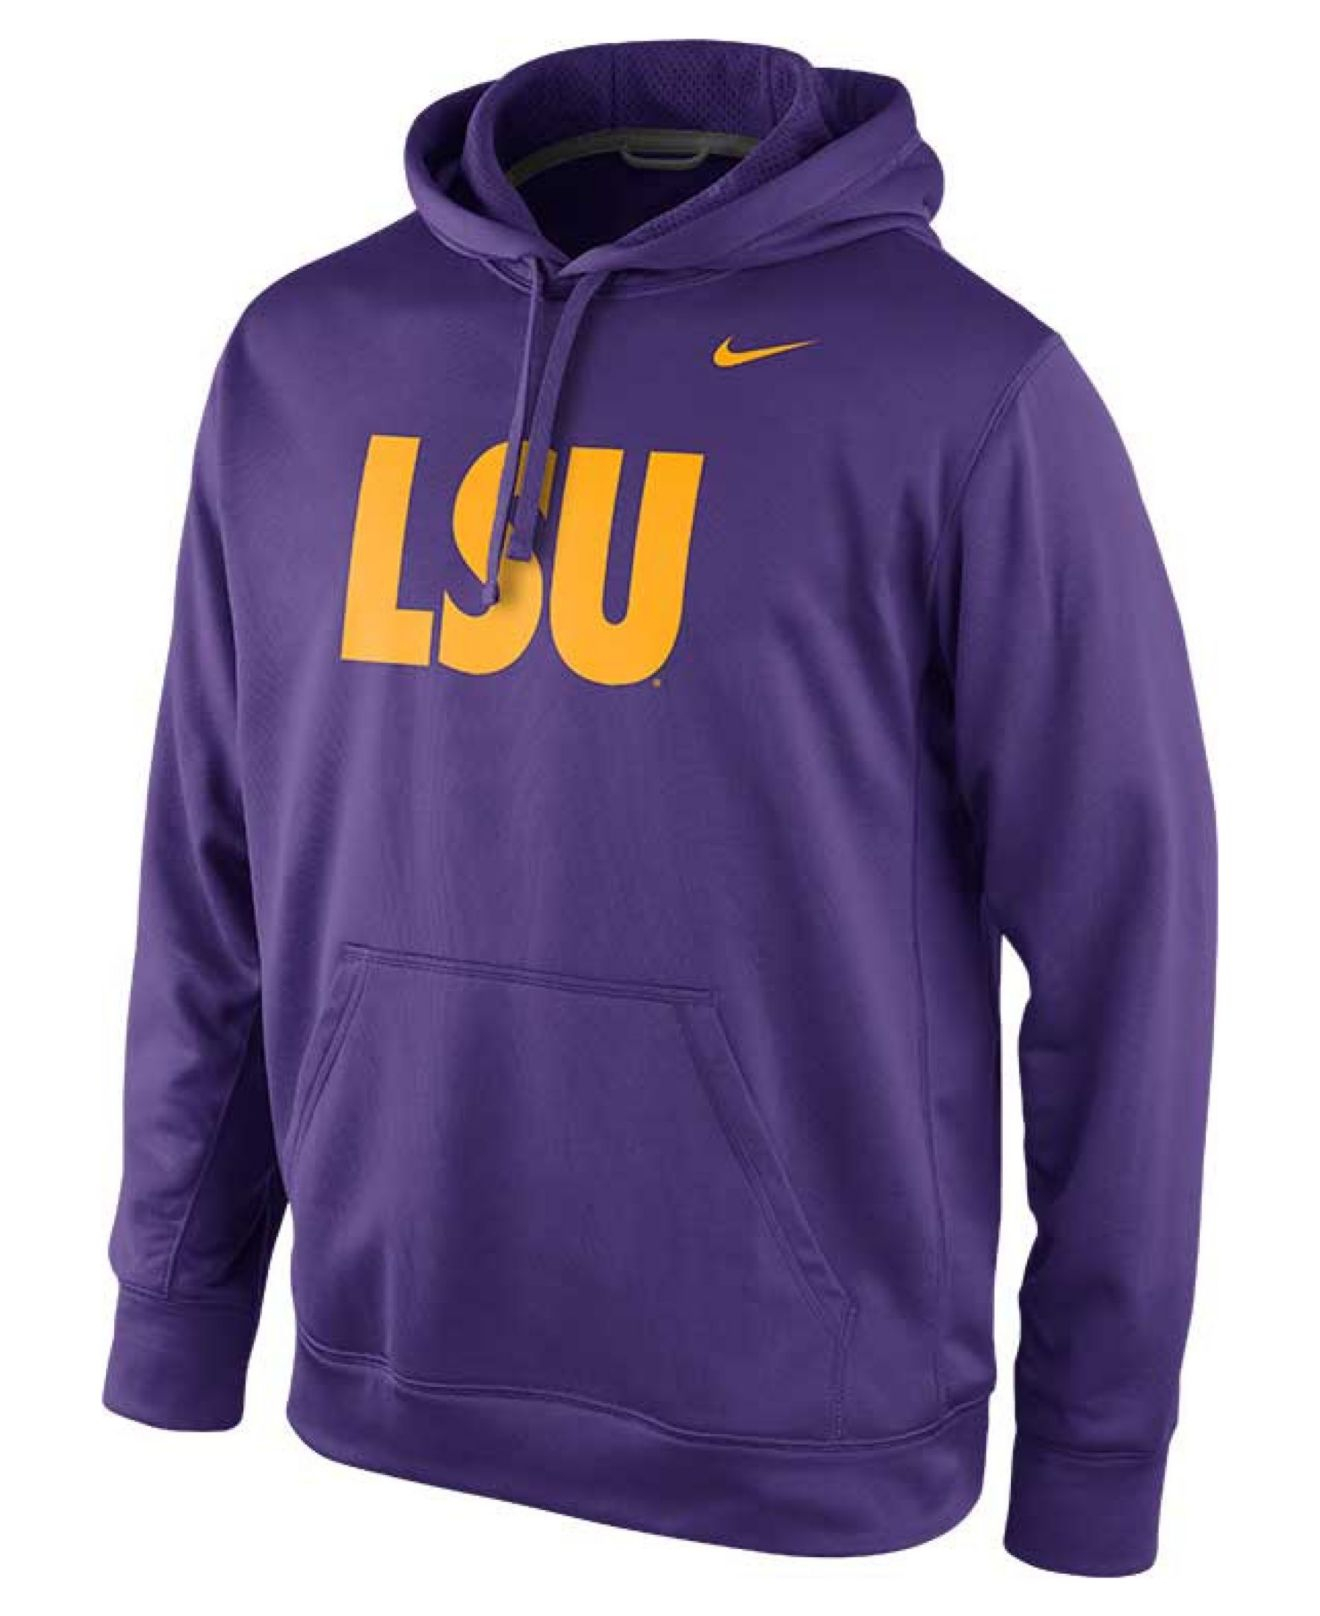 Lyst - Nike Men's Lsu Tigers Hoodie Sweatshirt in Purple for Men